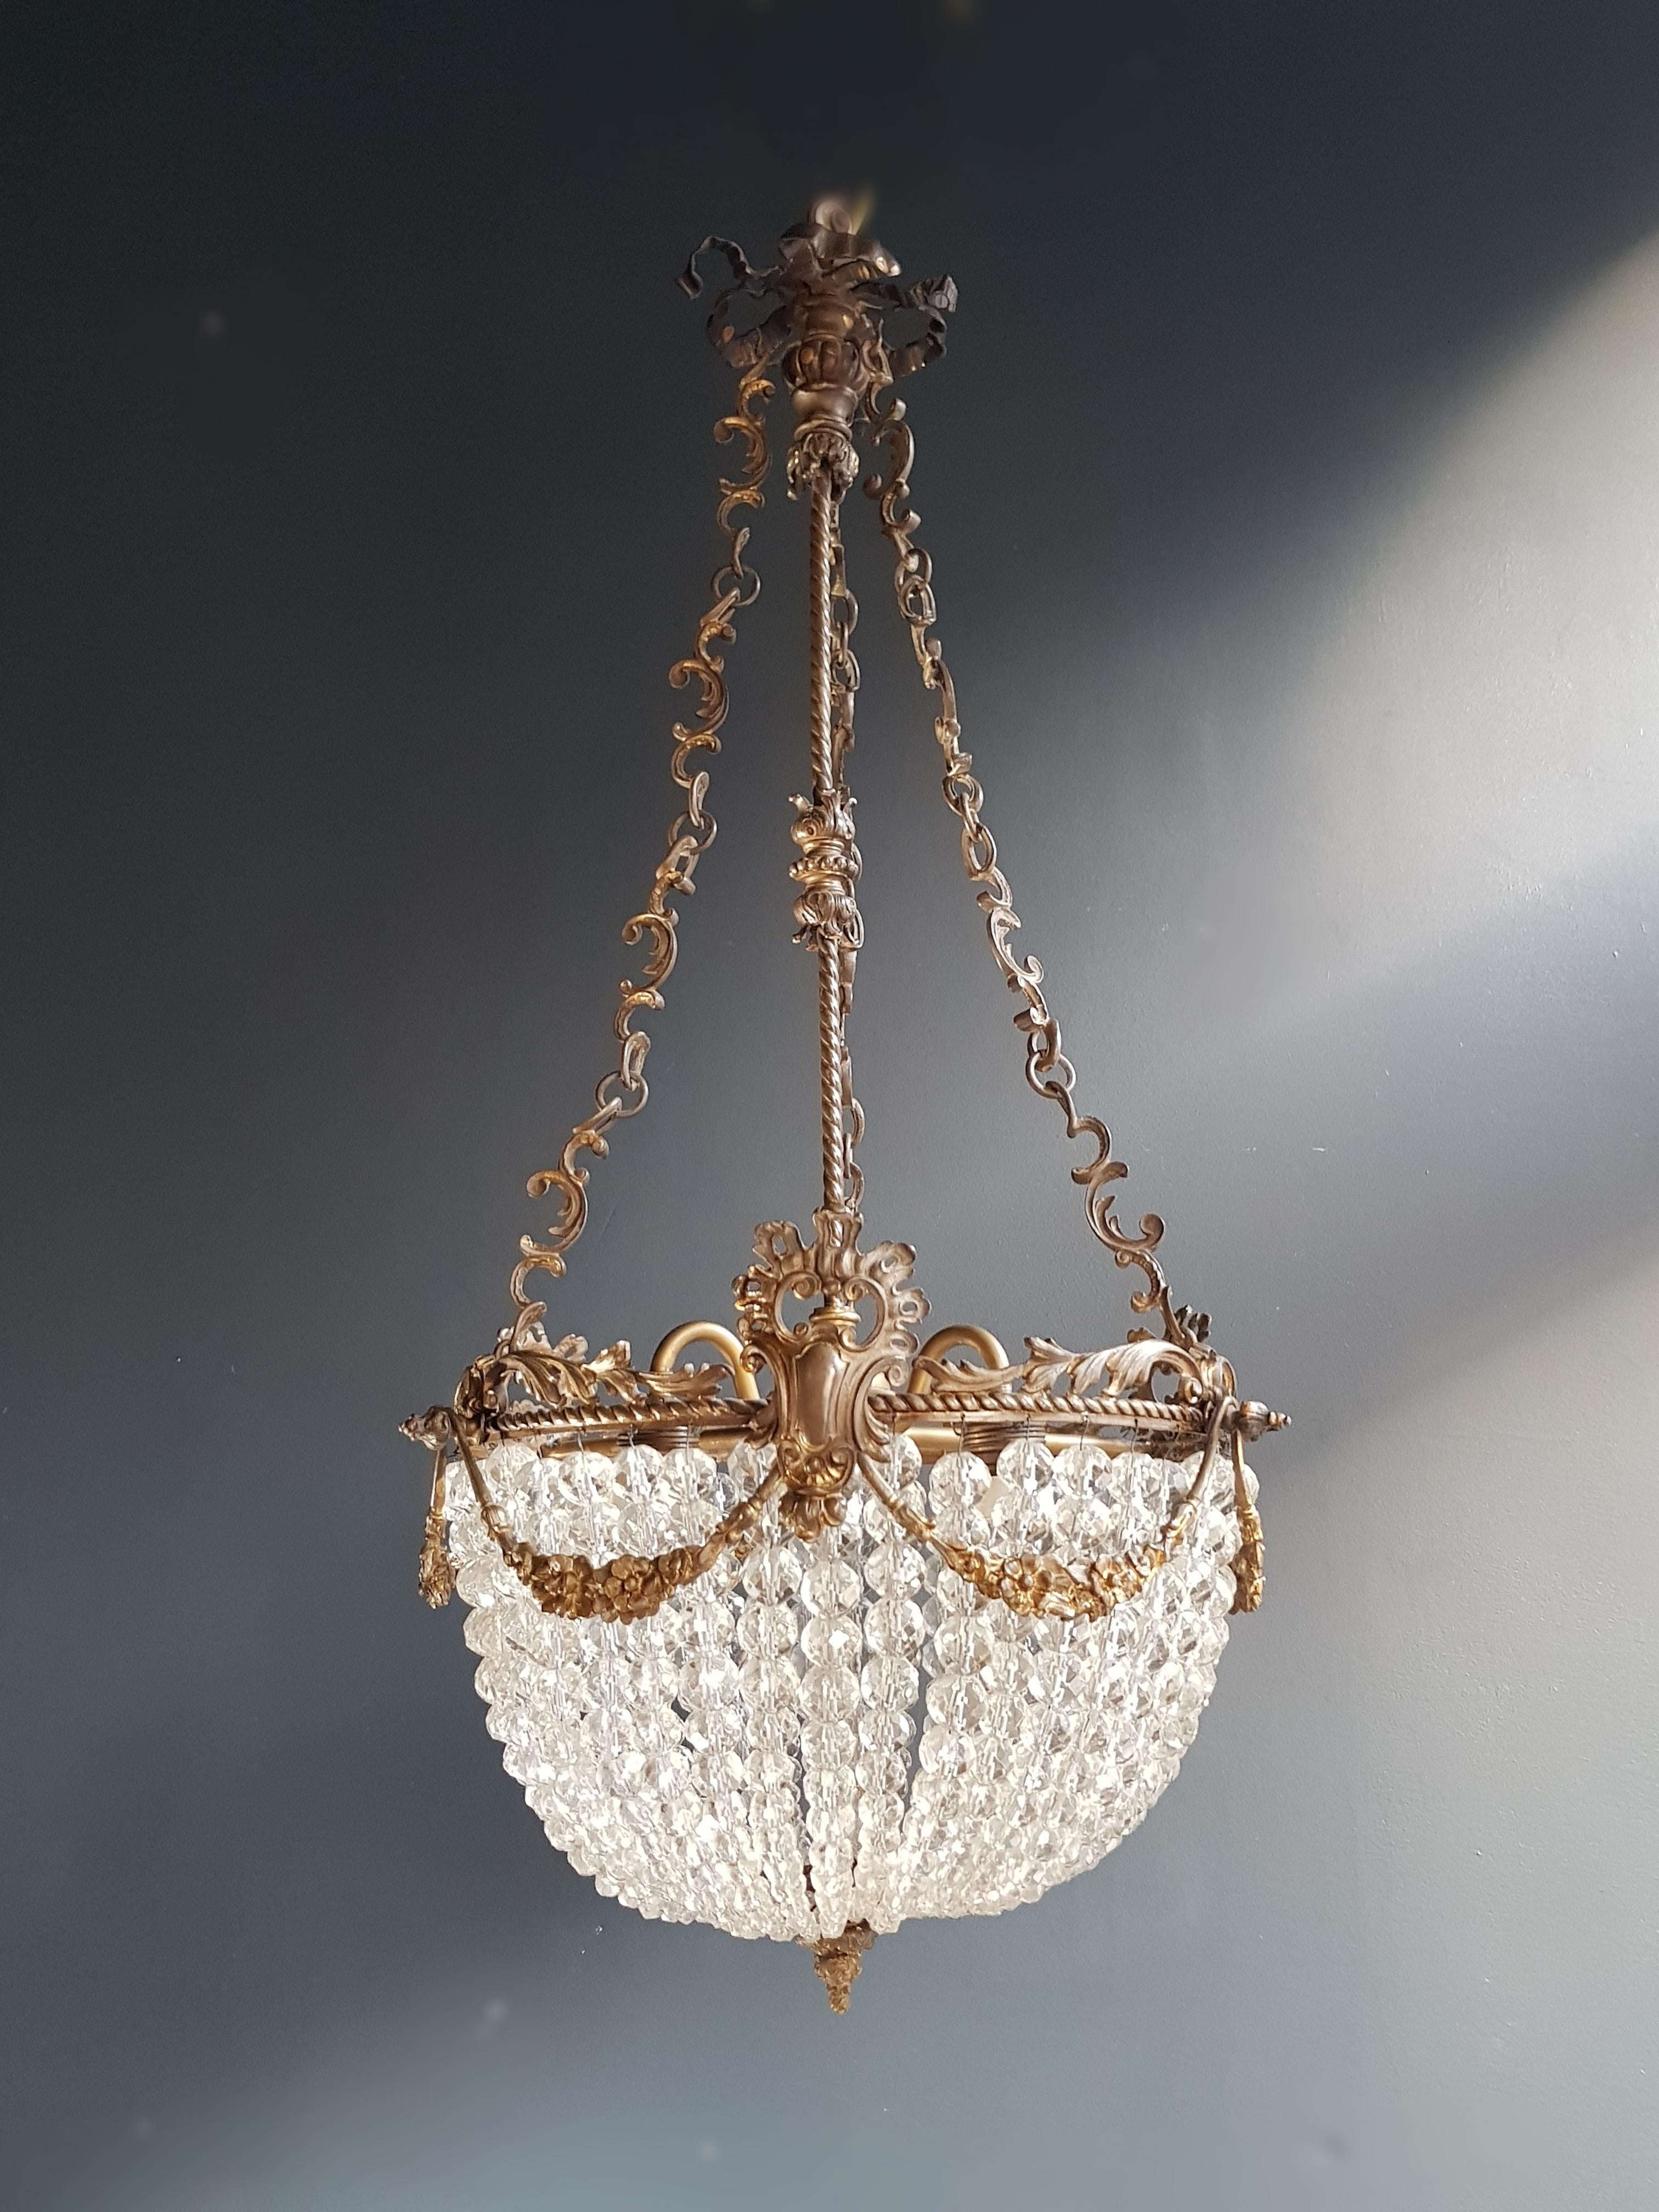 Glass Beaded Crystal Basket Chandelier Antique Ceiling Lamp Lustre Art Nouveau